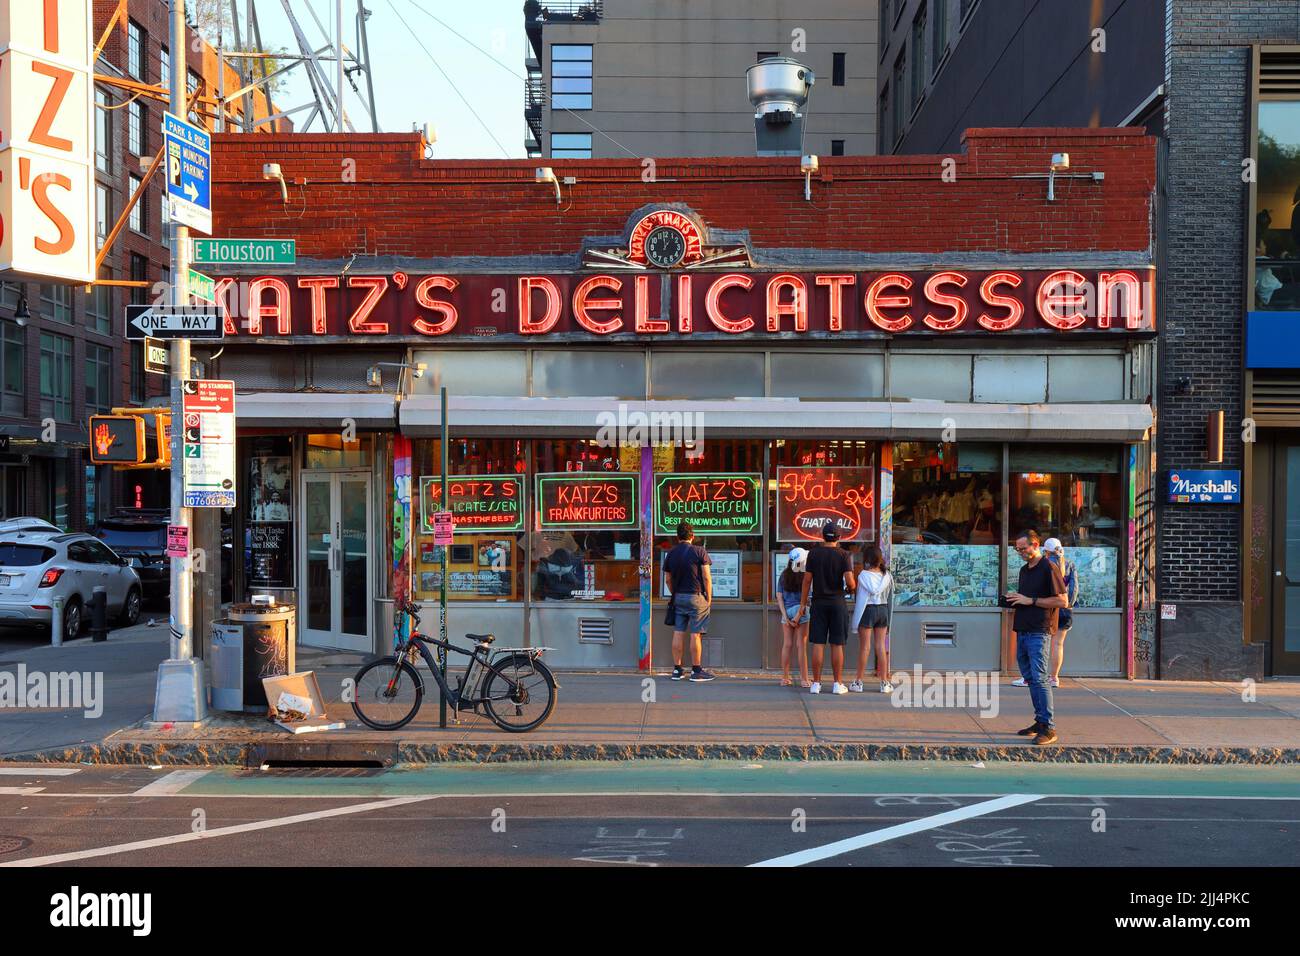 Katz's Delicatessen, 205 East Houston Street, New York, foto del negozio di New York di un ristorante gastronomico in stile kosher nel Lower East Side di Manhattan Foto Stock